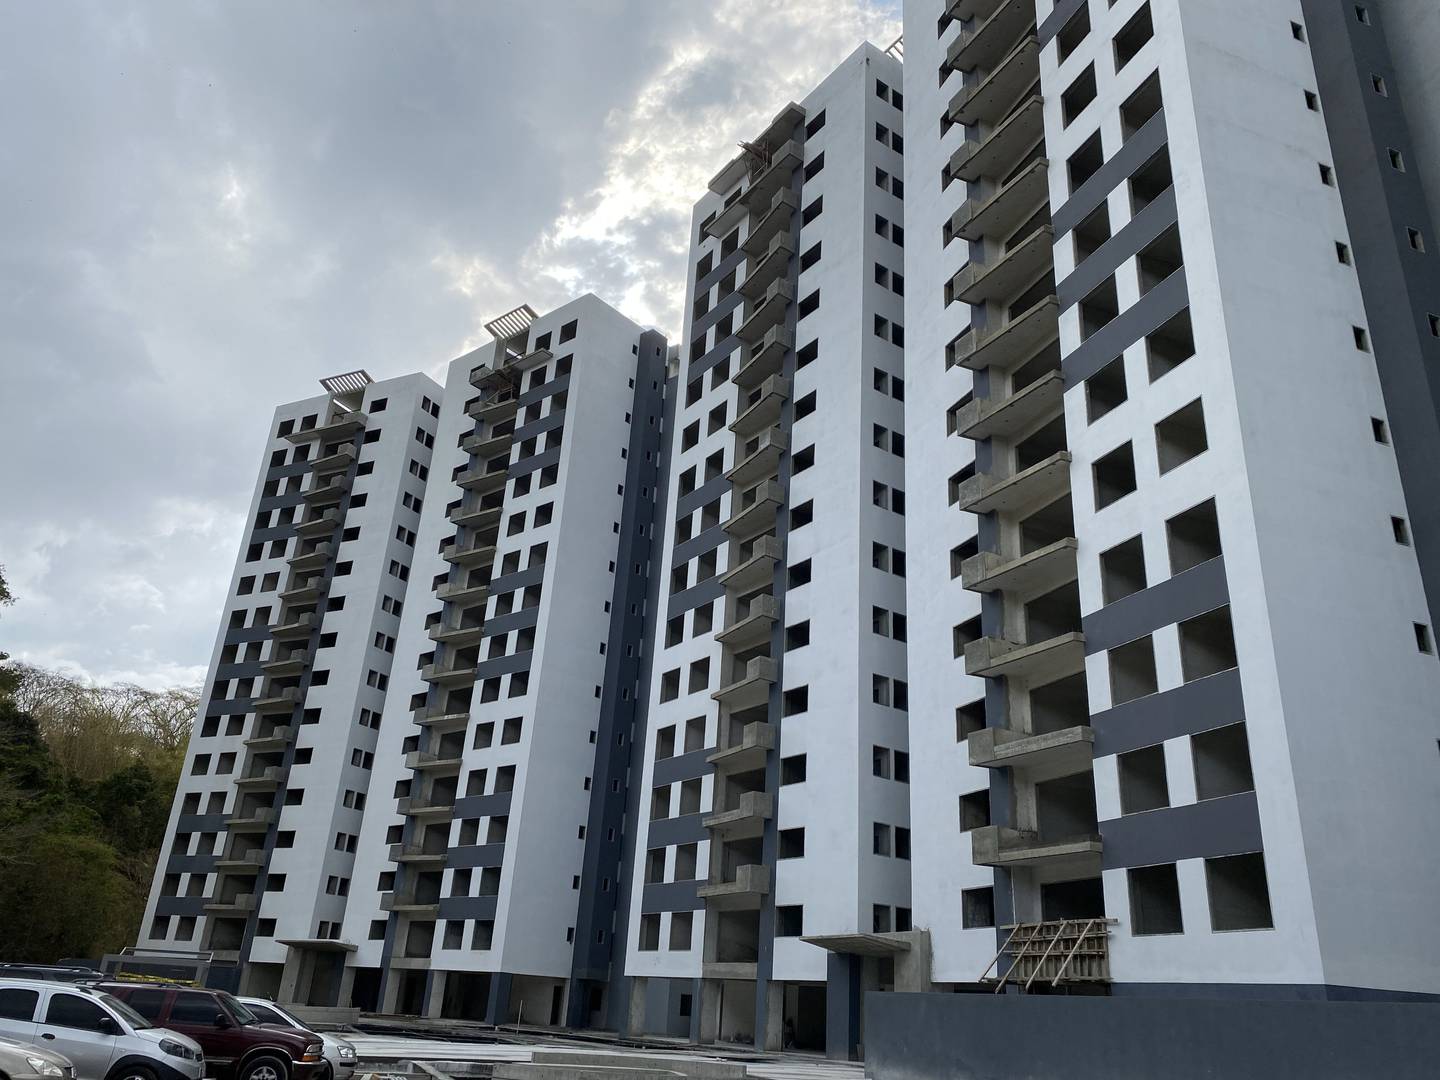 Constructora Sambil oficializó pre-venta de lujoso complejo urbanístico en el este de Caracas / Raylí Luján